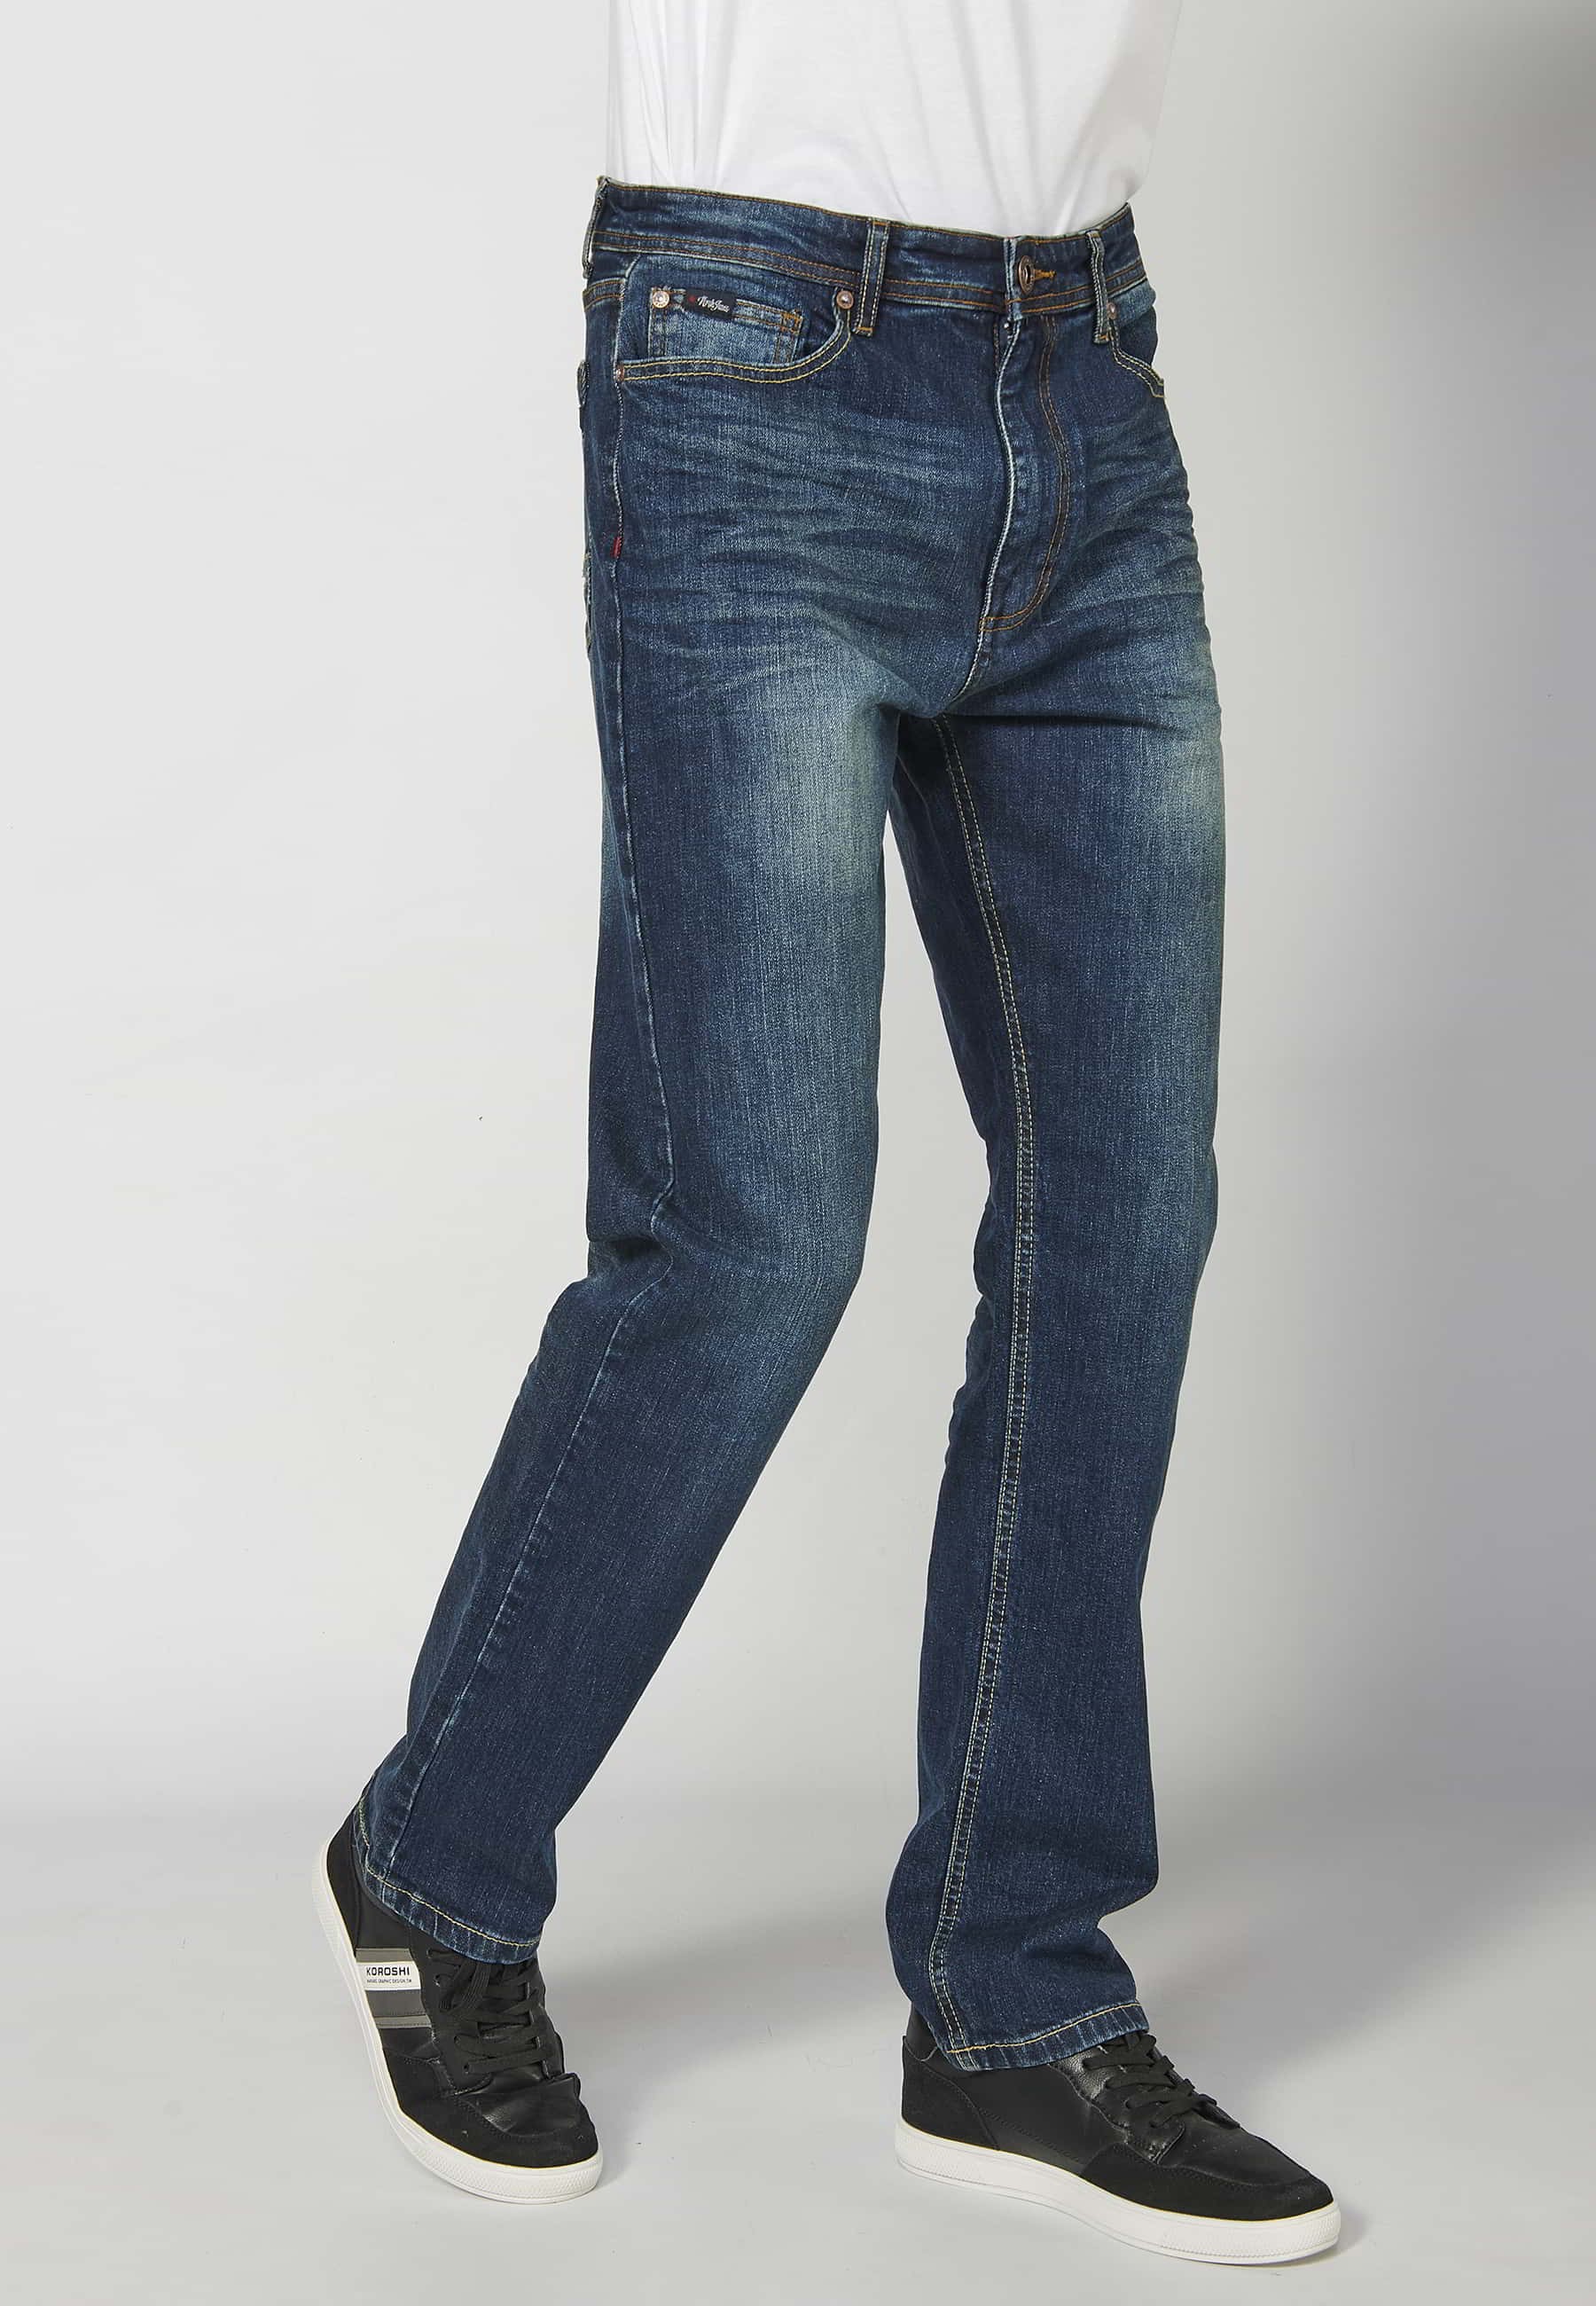 Pantalons llargs jeans strech regular fit amb cinc butxaques color Blau Fosc per a Home